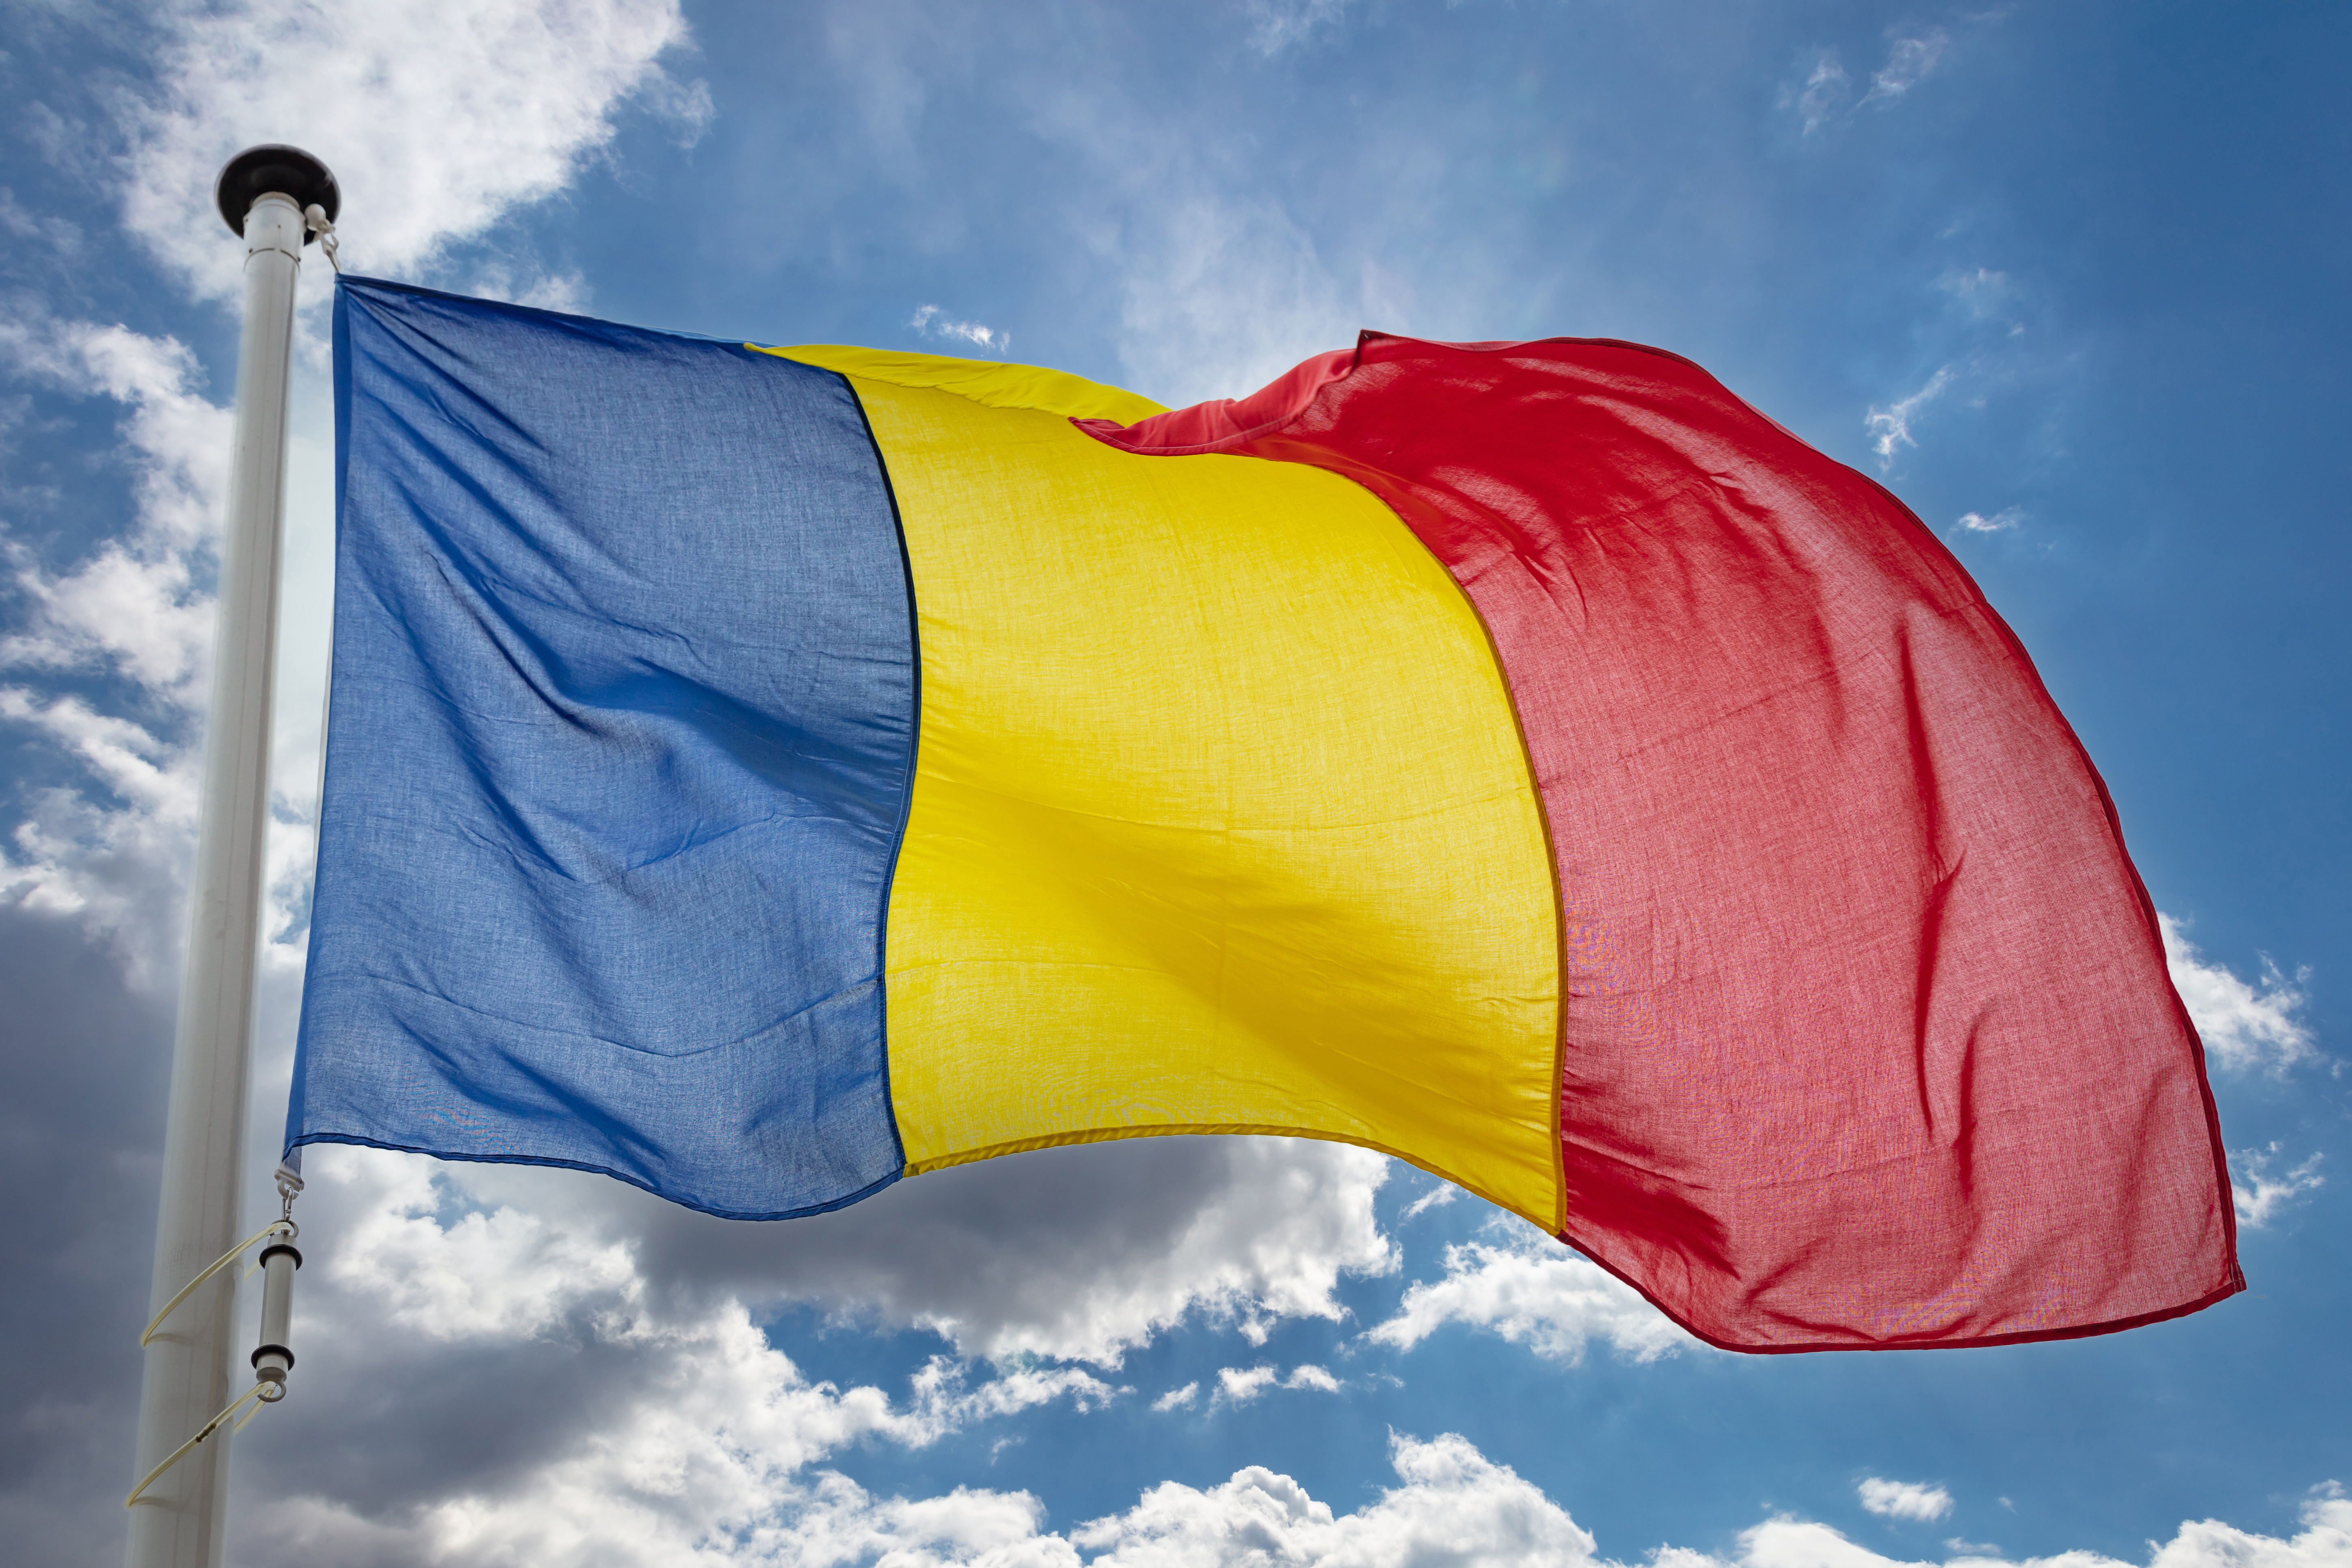 ANC (АНЧ) Румынии: что это и как работает по программе репатриации